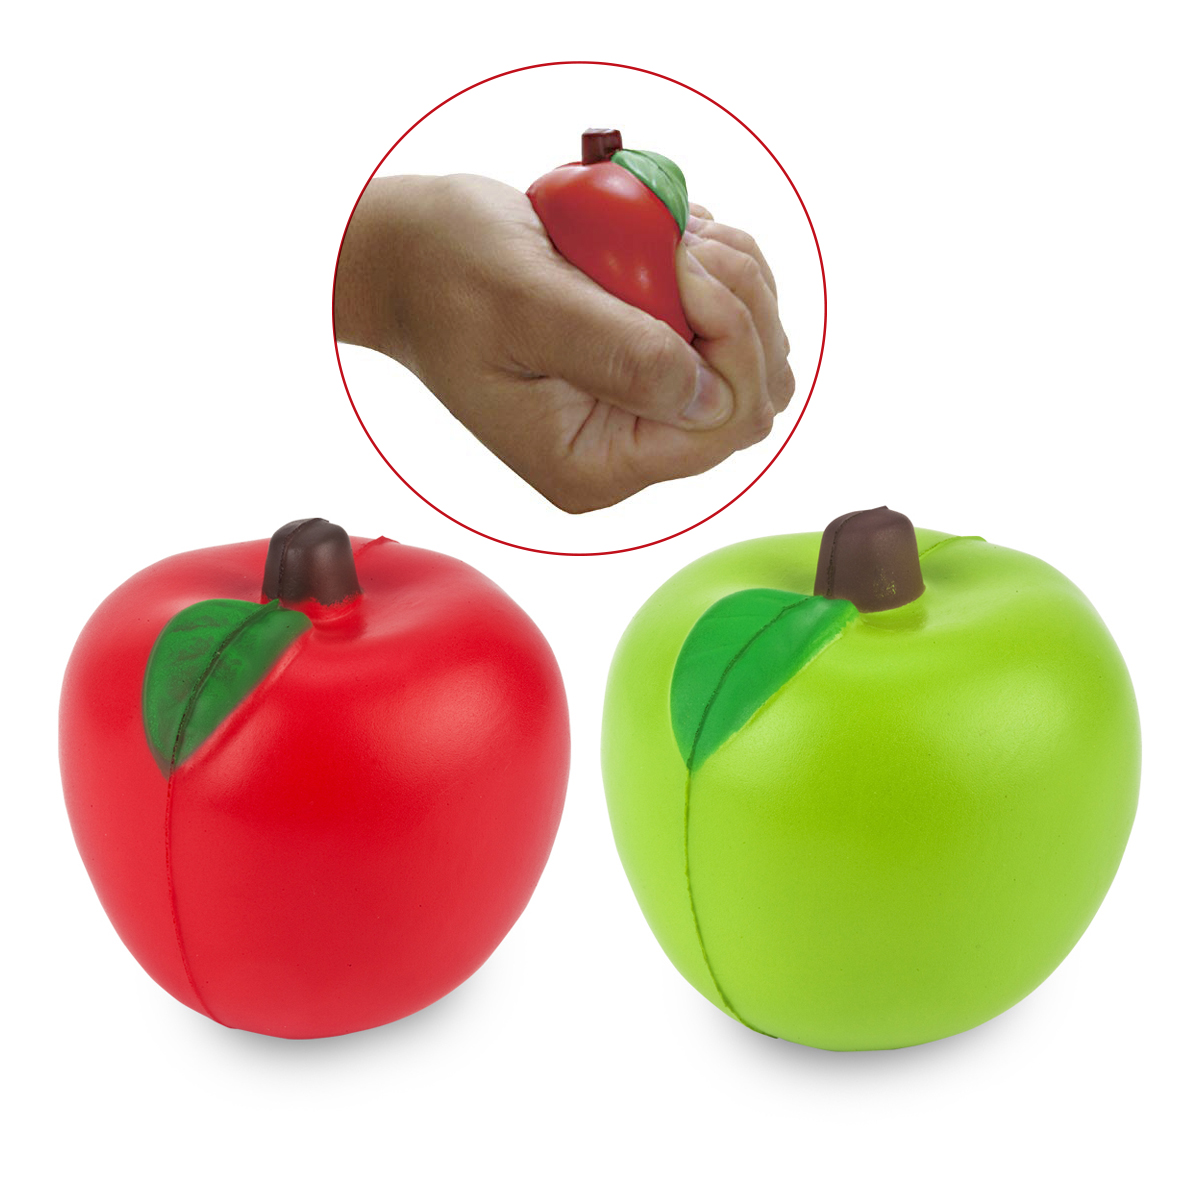 כדור לחץ בצורת תפוח